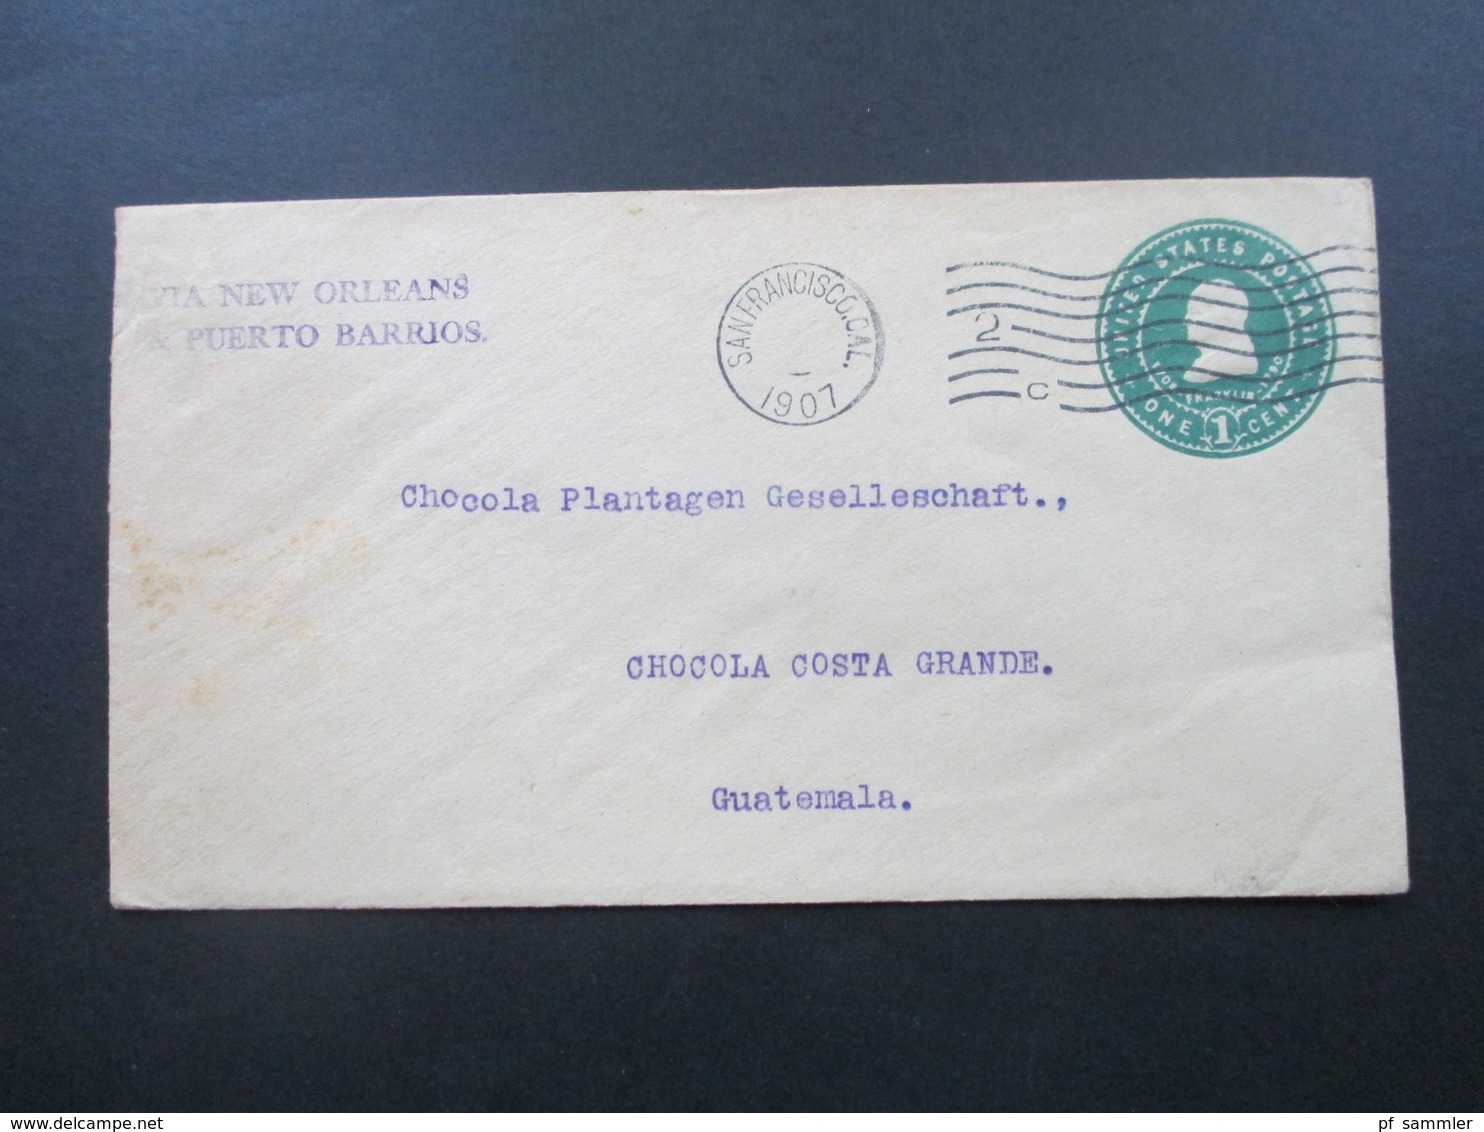 USA 1893 - 1932 Belege / Ganzsachen teilw, nach Guatemala Plantagen Gesellschaft mit Transit Stempel. Stöberposten!